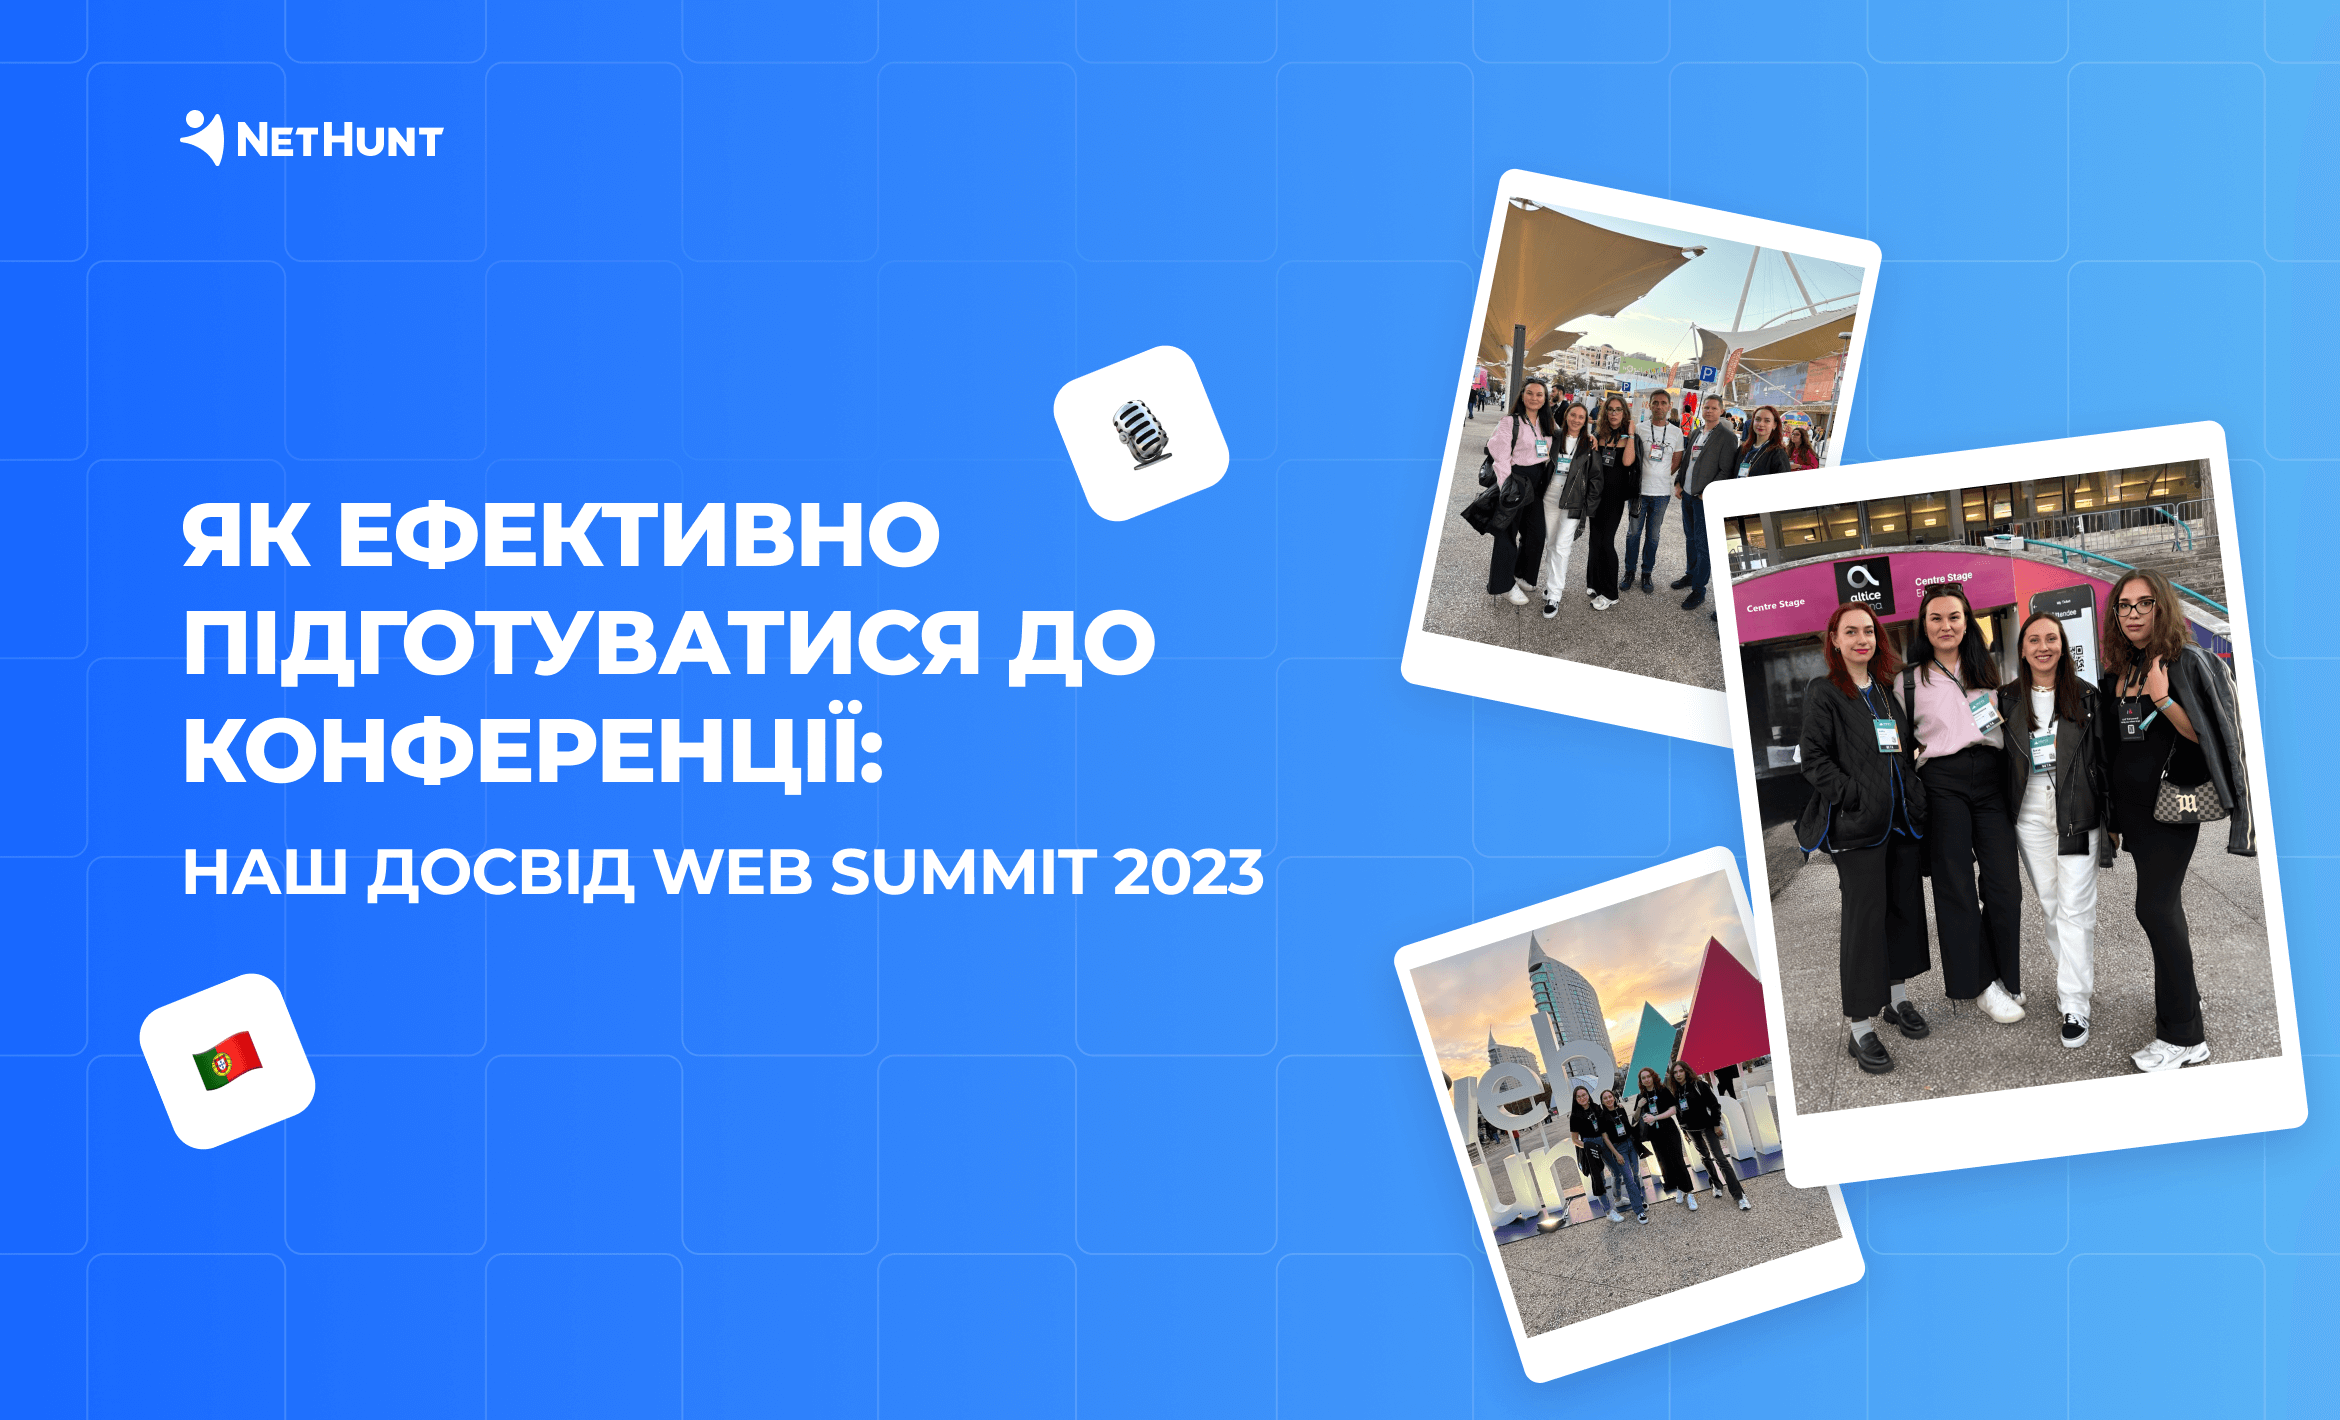 NetHunt CRM на Web Summit 2023: досвід та поради для ефективної підготовки до конференції